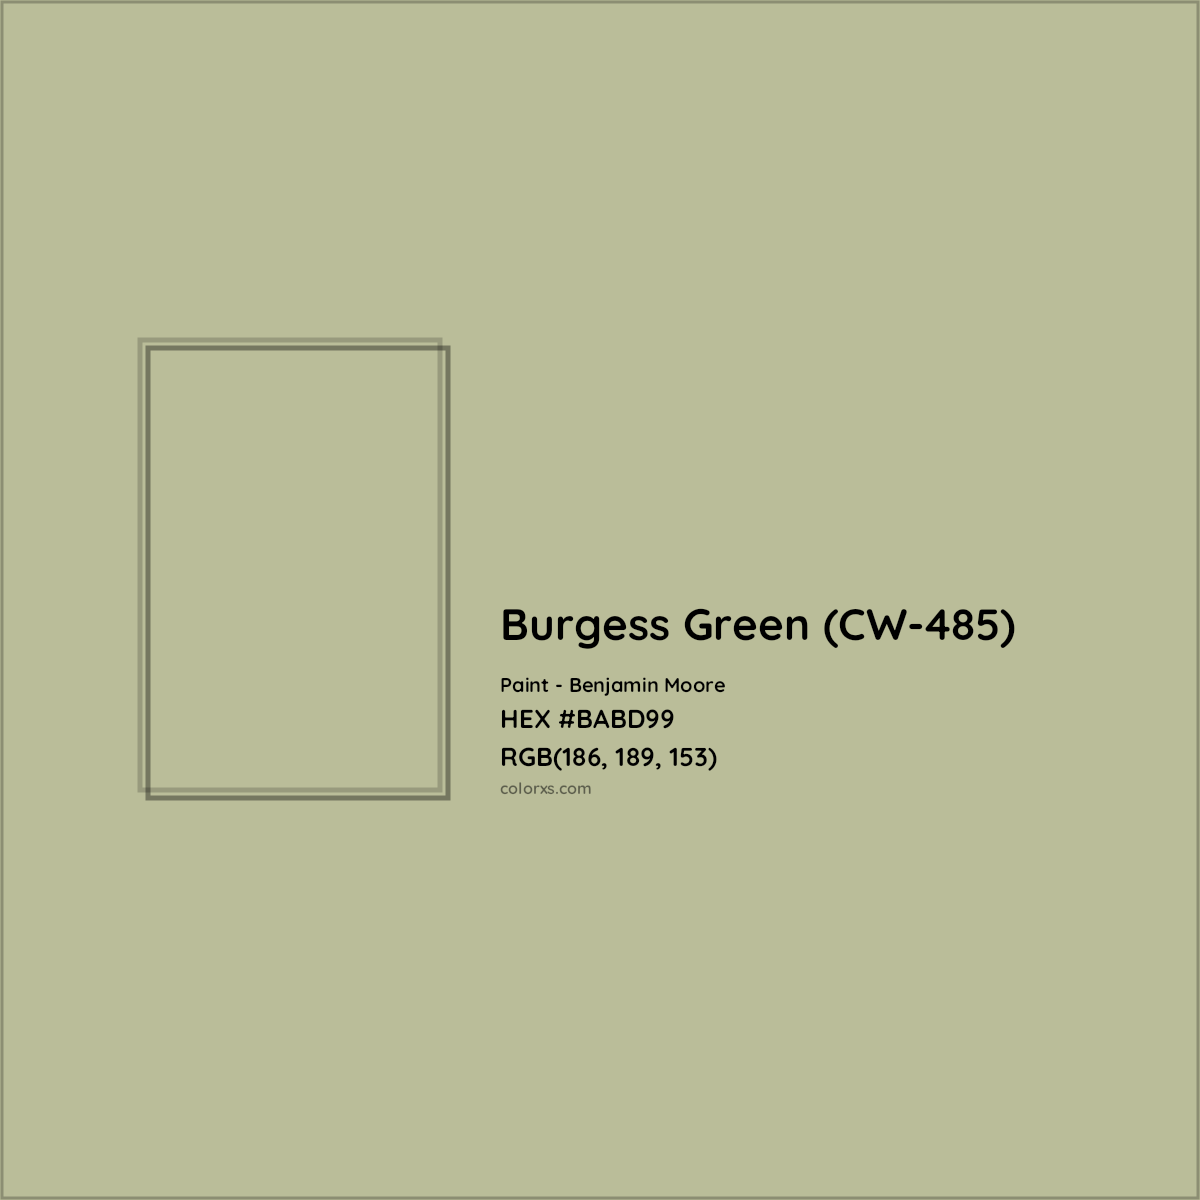 HEX #BABD99 Burgess Green (CW-485) Paint Benjamin Moore - Color Code